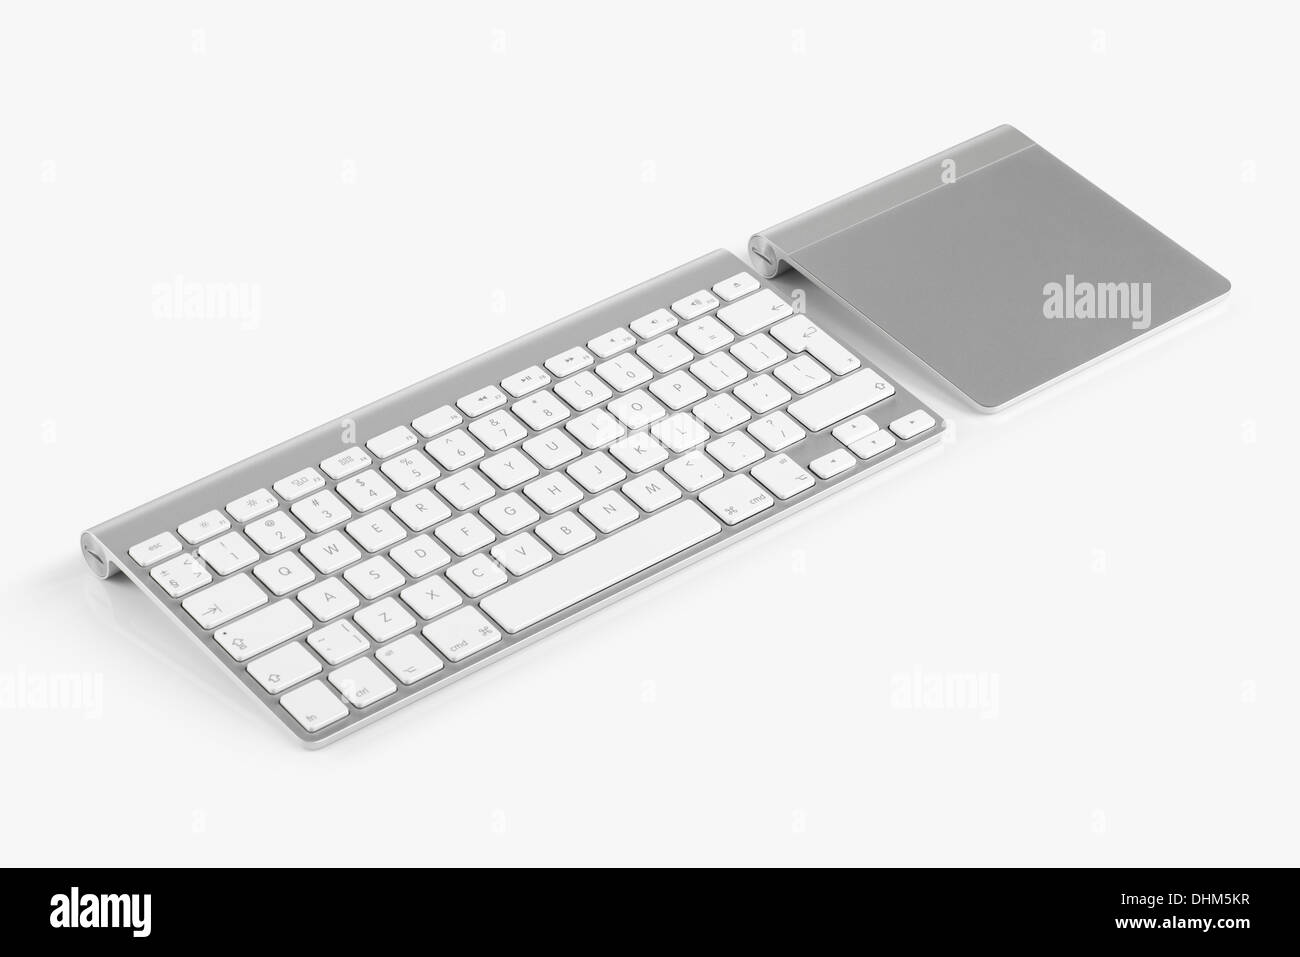 Il computer wireless per tastiera con l'alfabeto inglese e il trackpad sono isolati su sfondo bianco Foto Stock